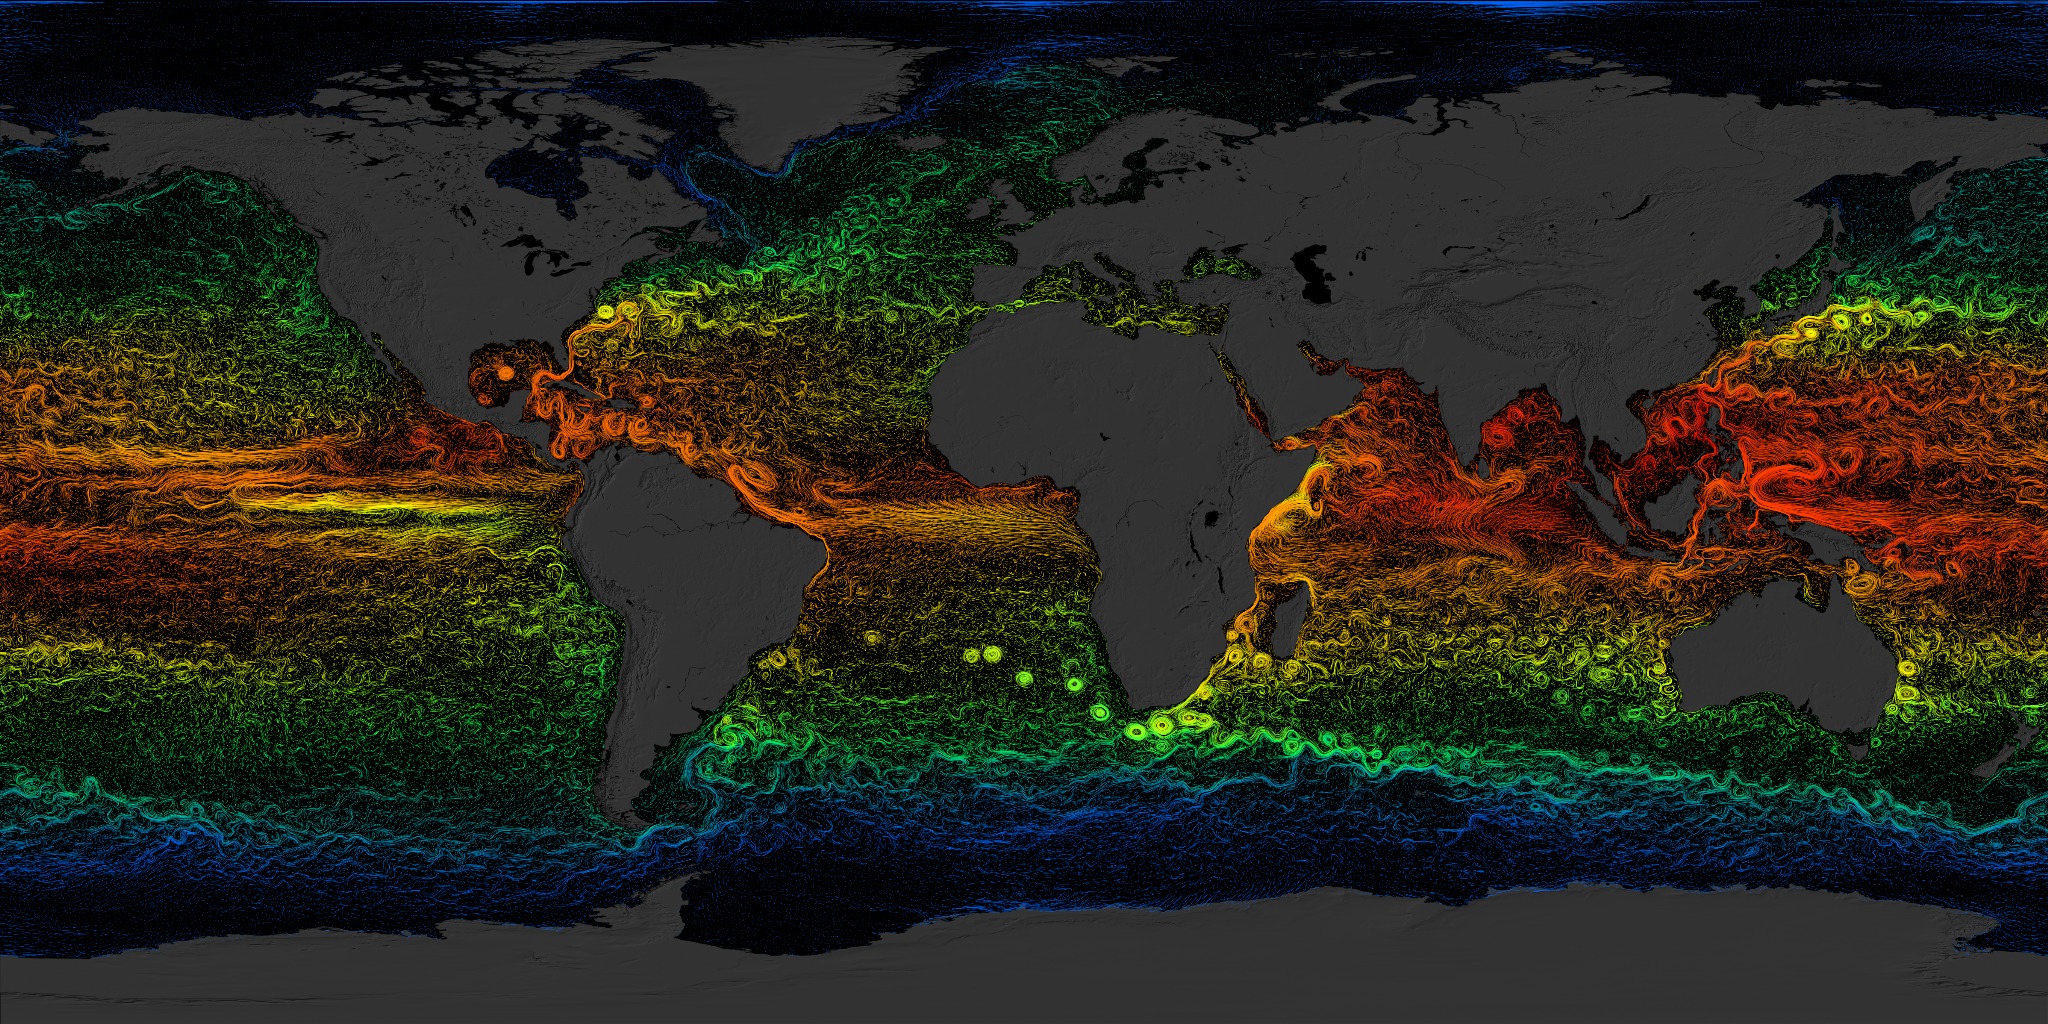 Ocean circulation model